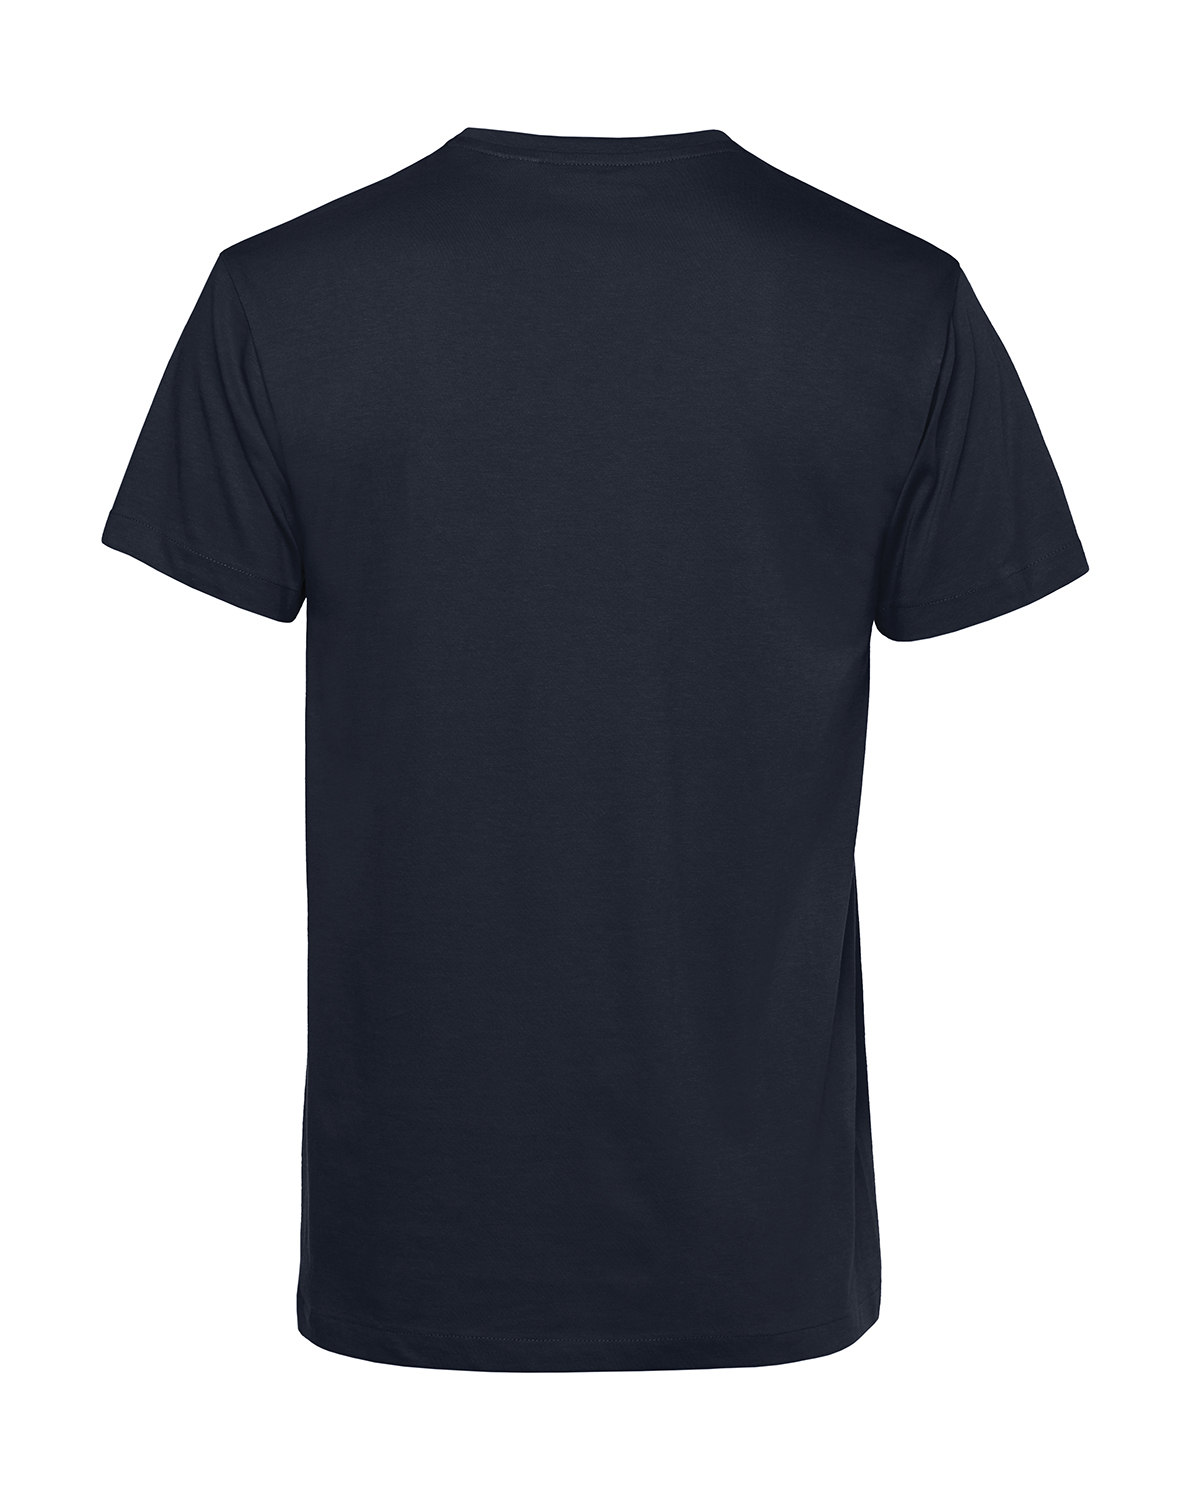 Nachhaltiges T-Shirt Herren 2Takt - Ganze Tankfüllung S50